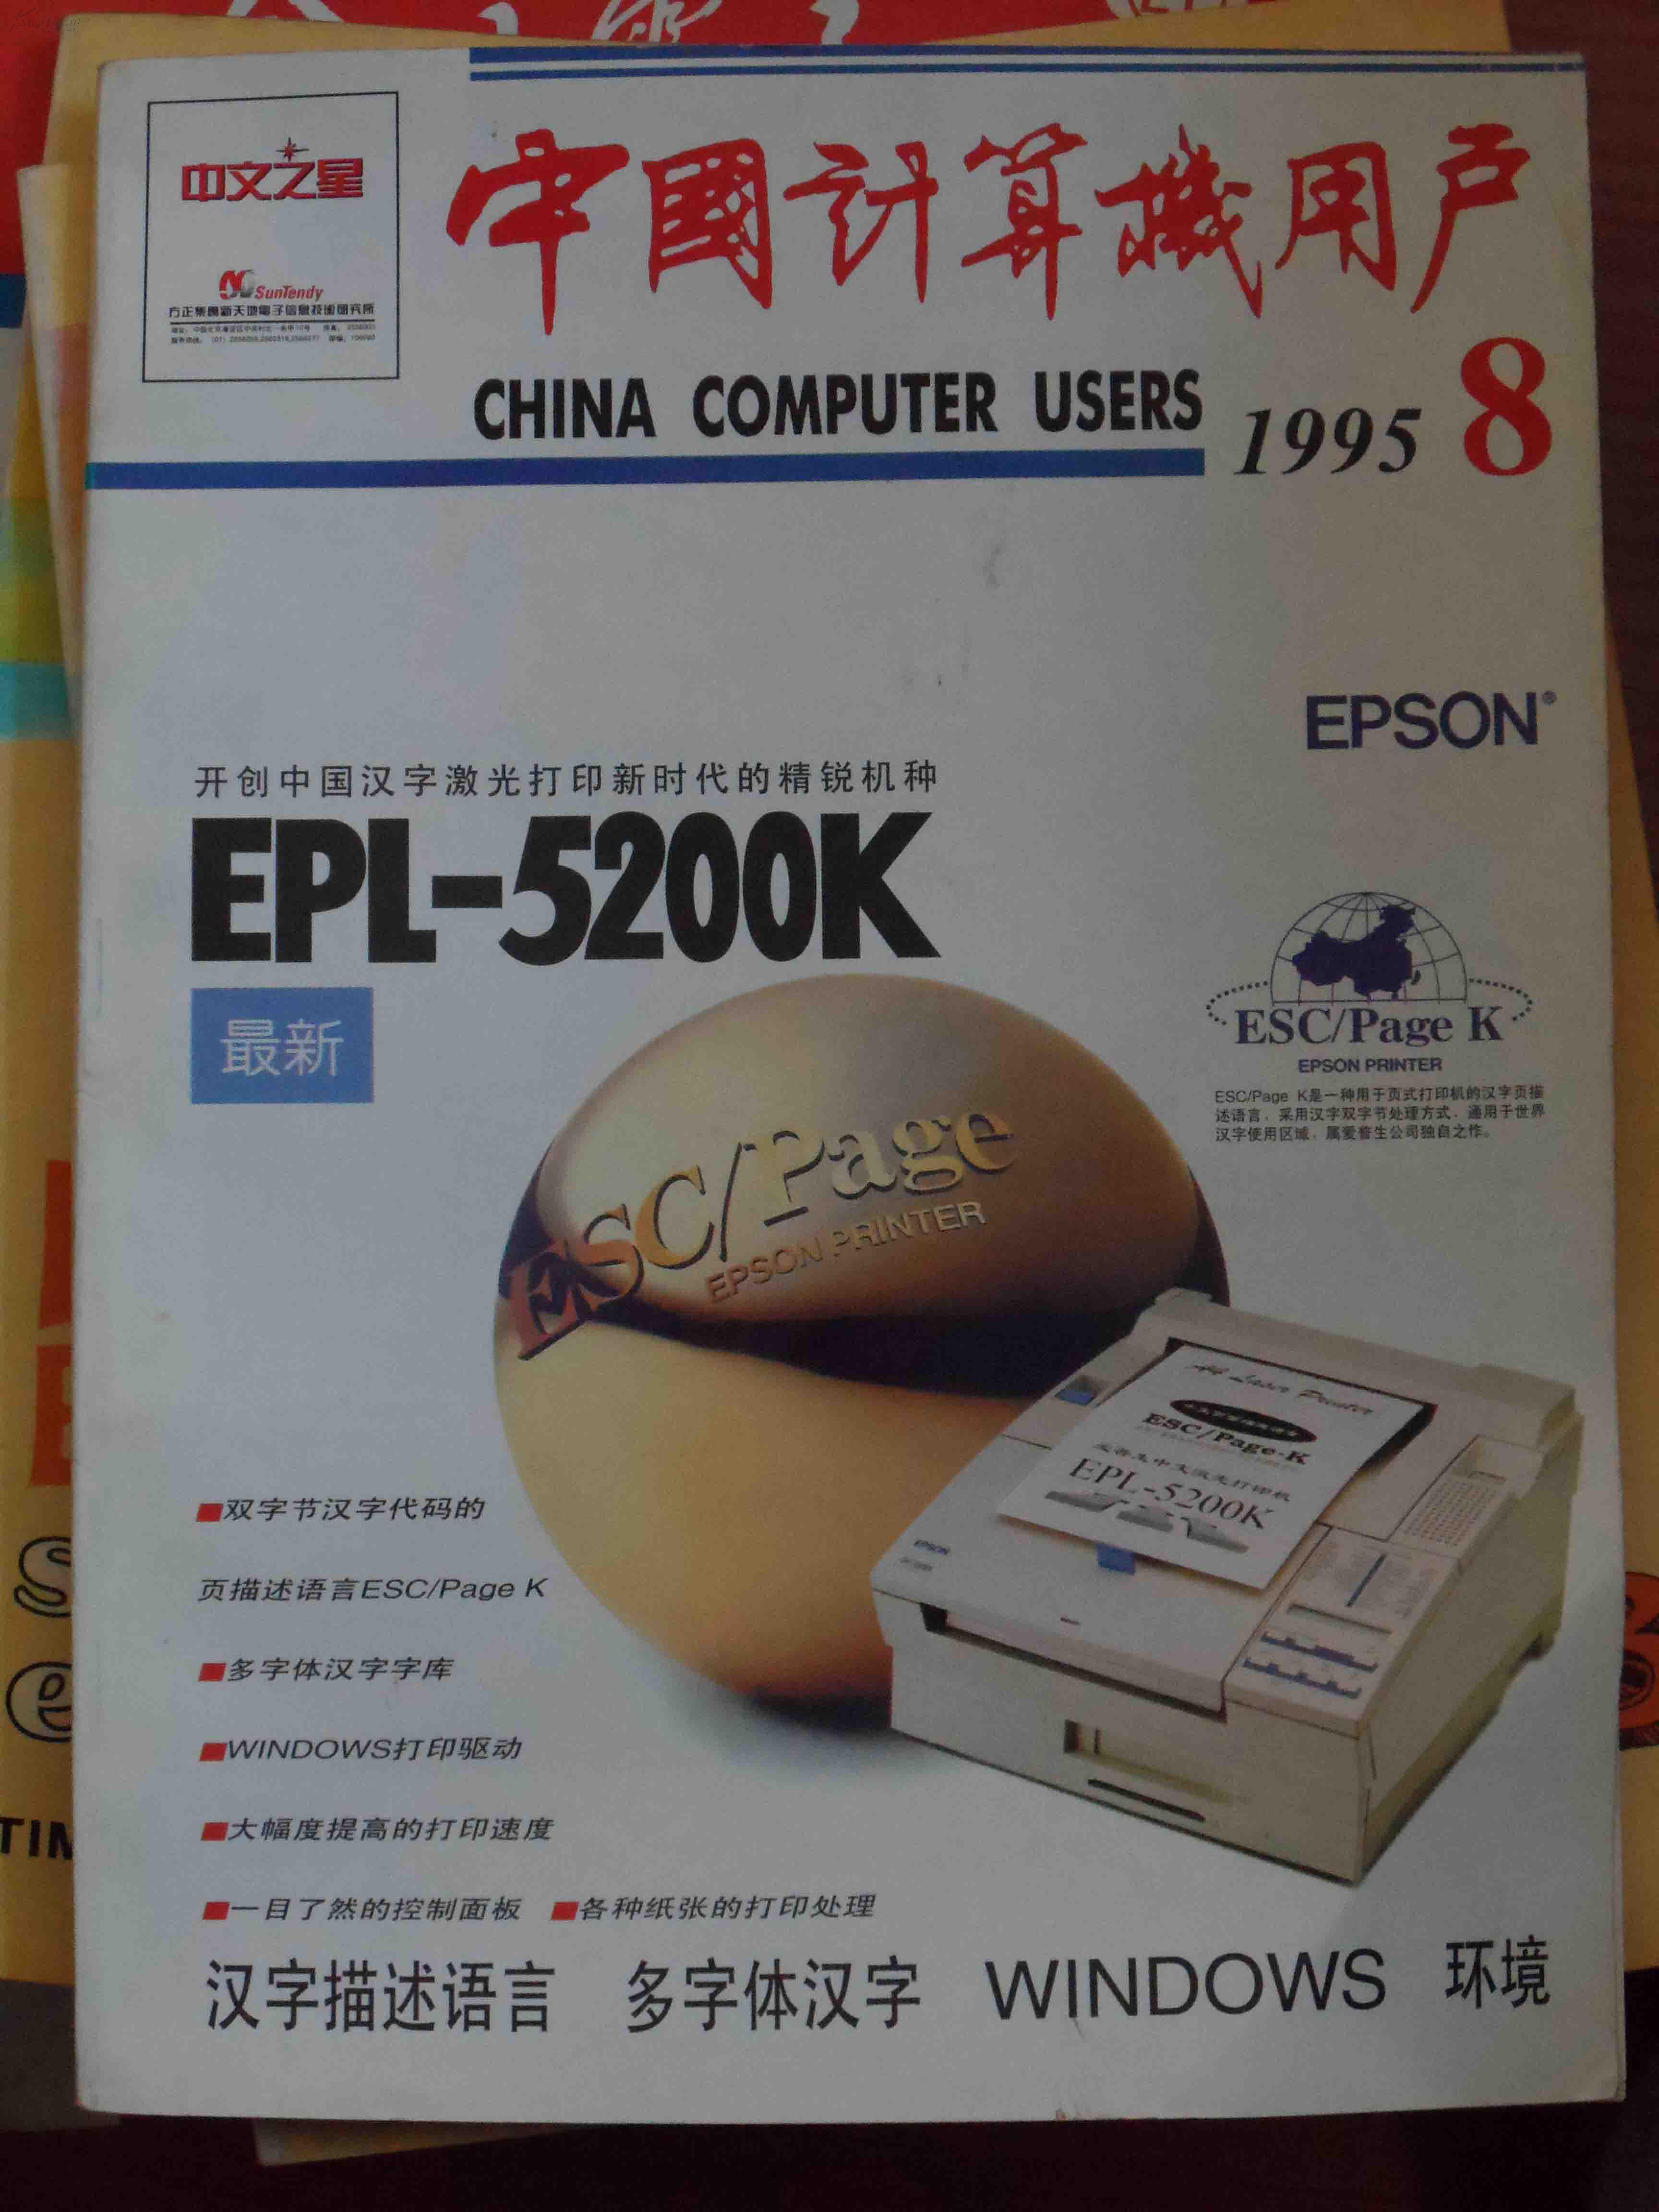 中国计算机用户 1995-8